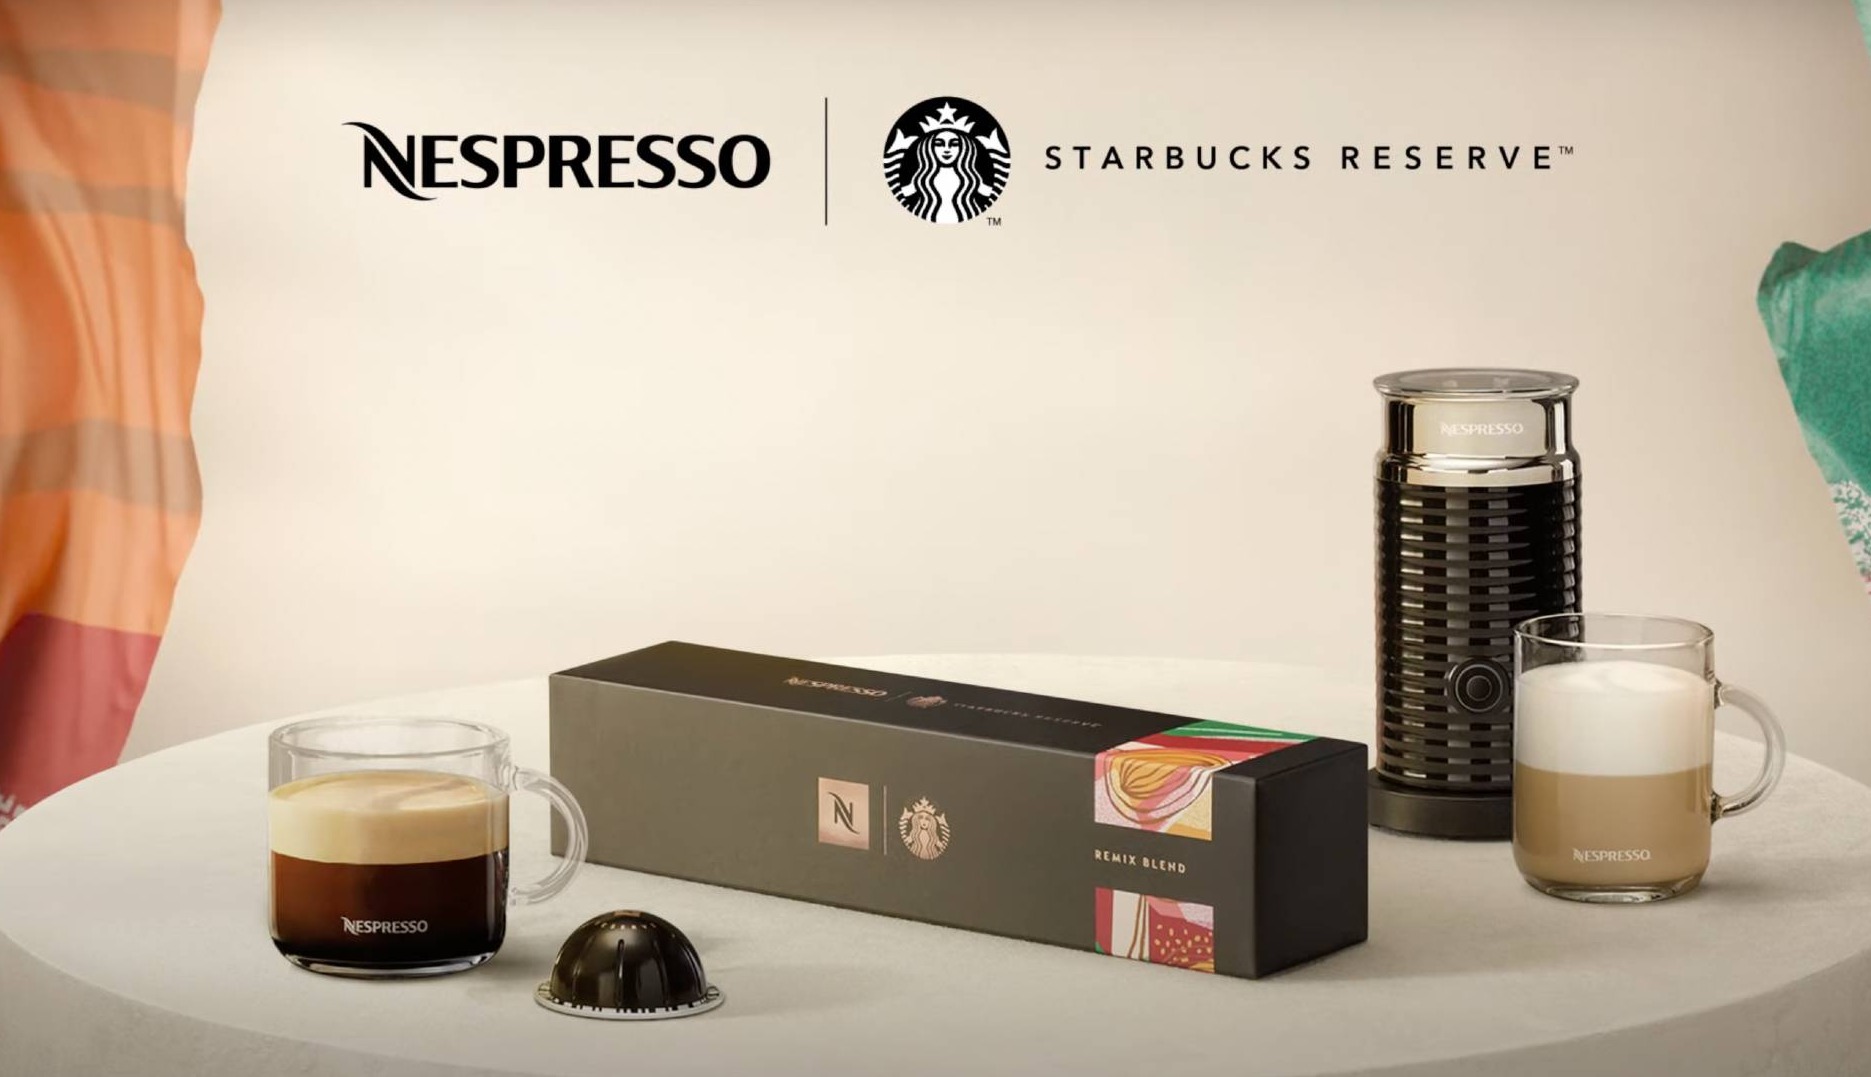 Starbucks y Nespresso se unen en el cobranding de una edición limitada de café